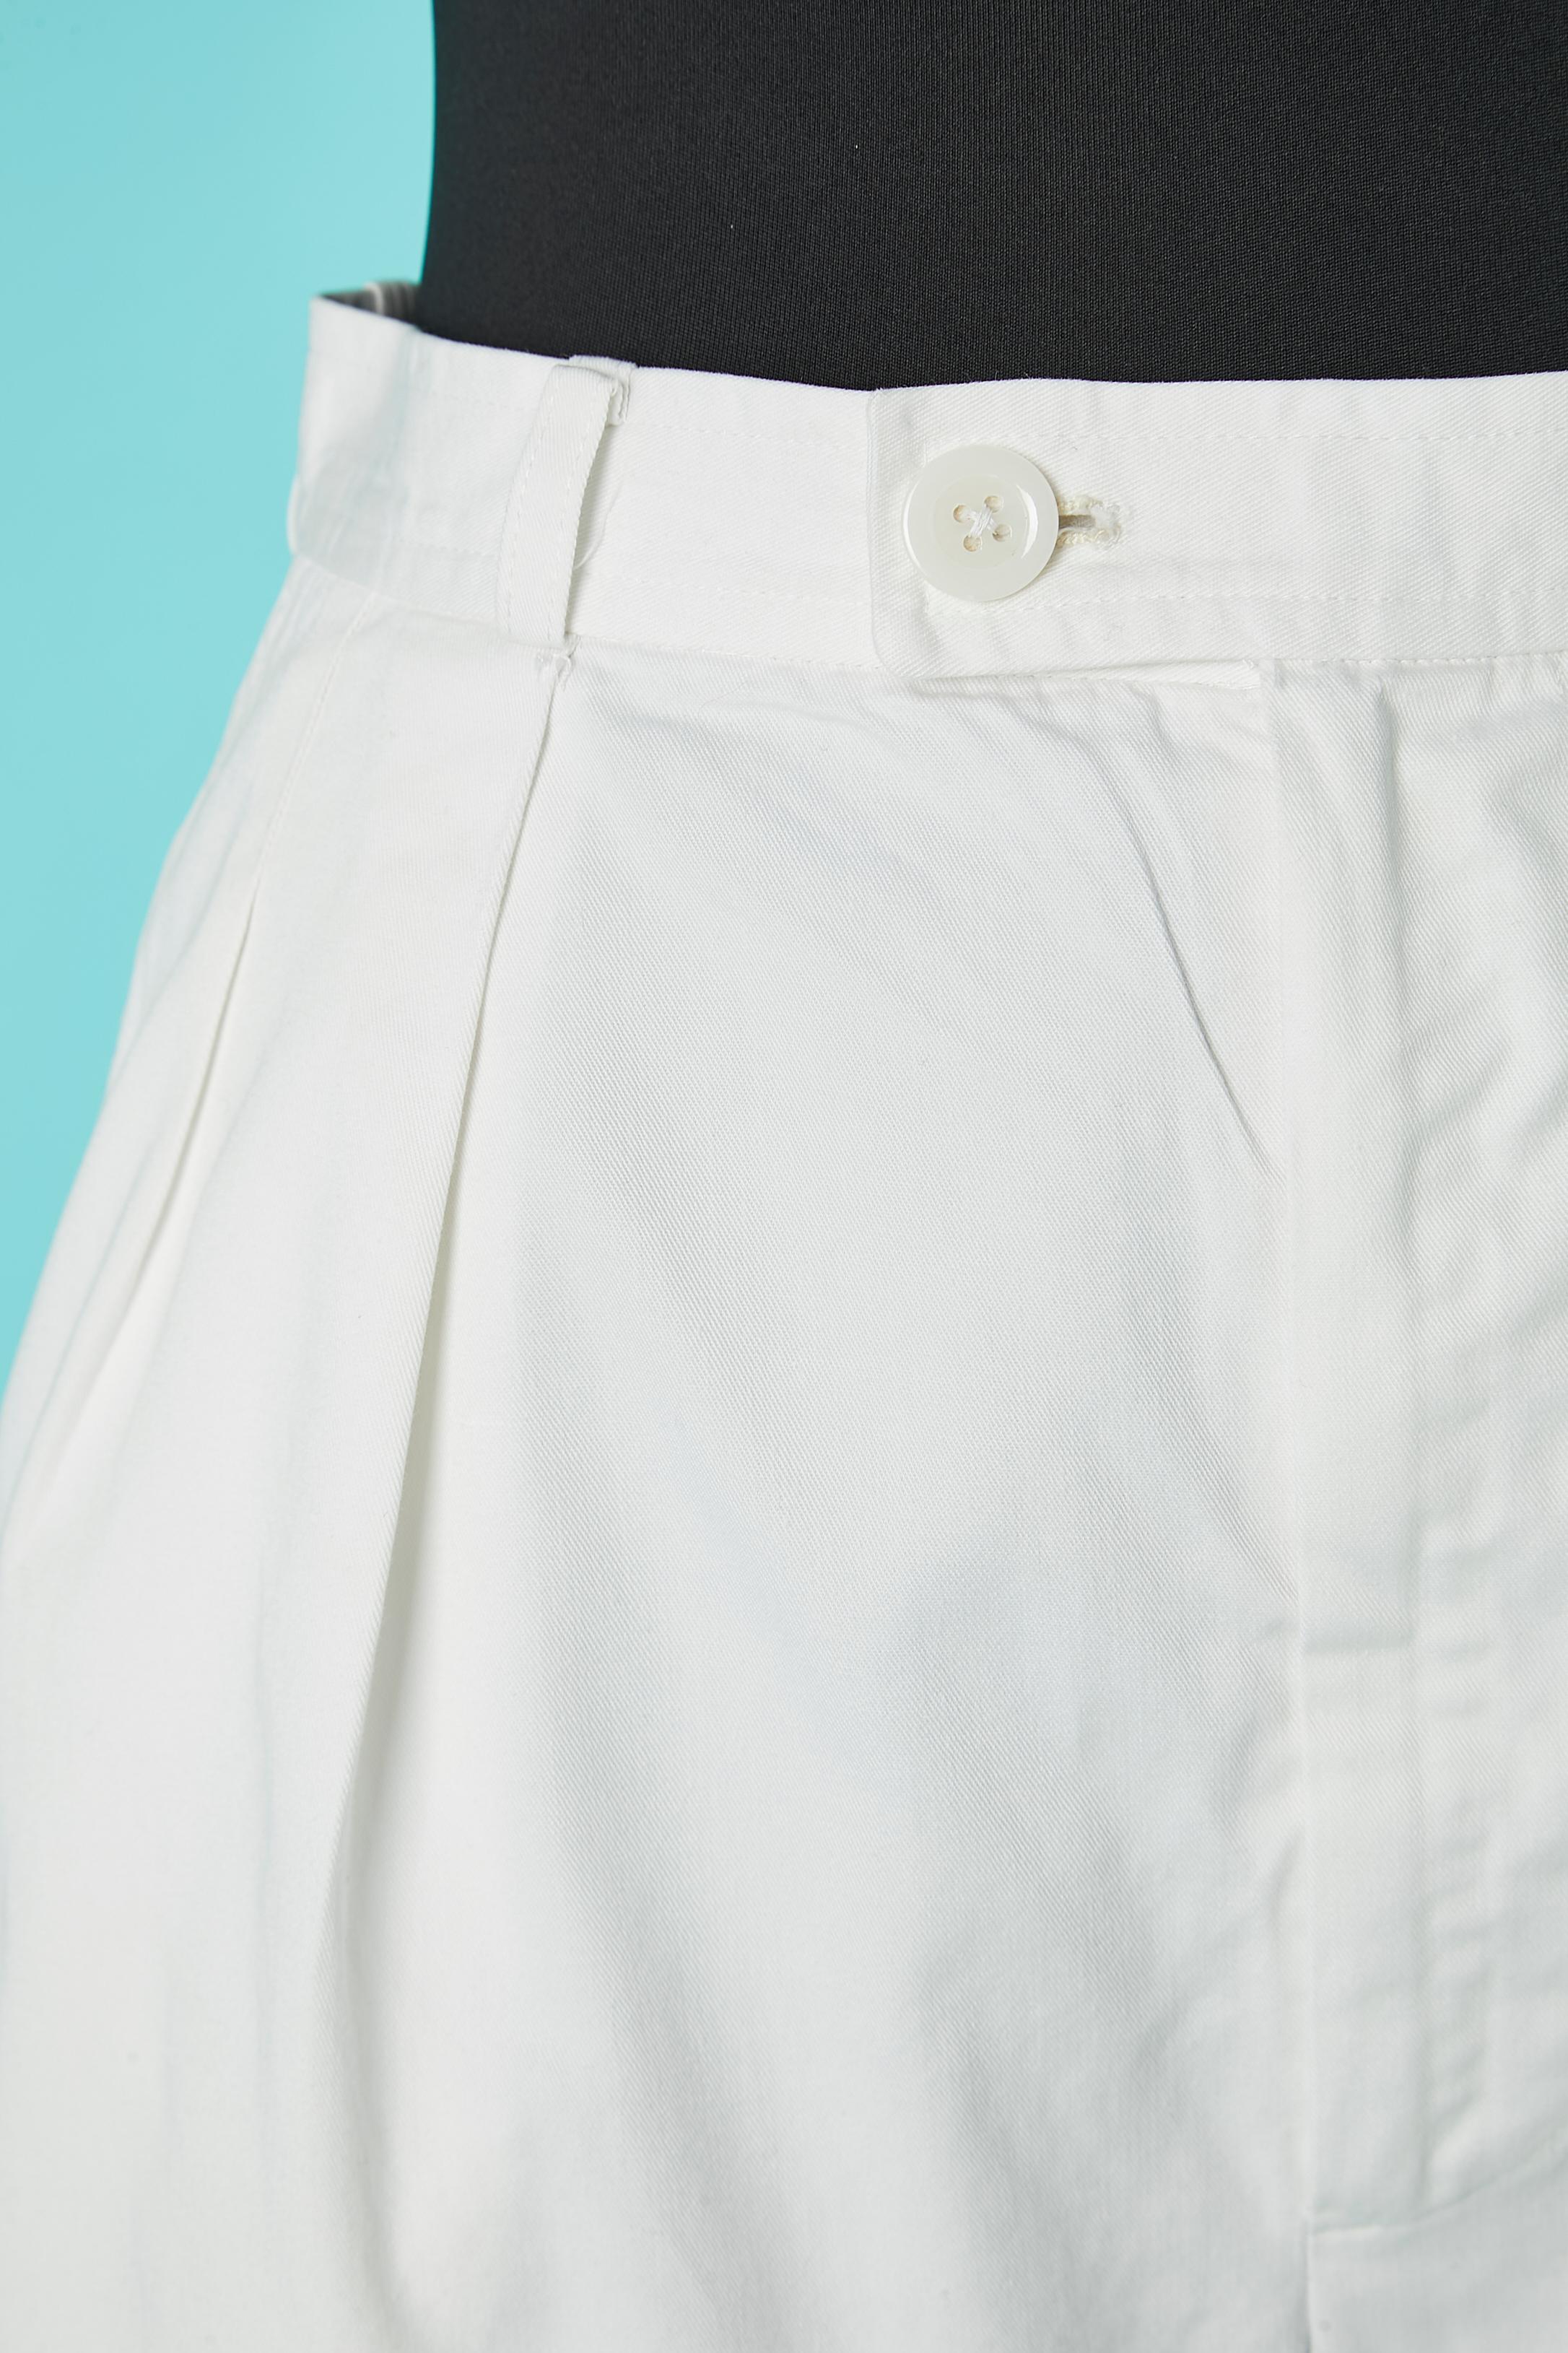 Weiße Baumwollbermudas mit Taschen auf beiden Seiten und 2 auf dem Rücken. Gürtel-Schleife. 
GRÖSSE XS 